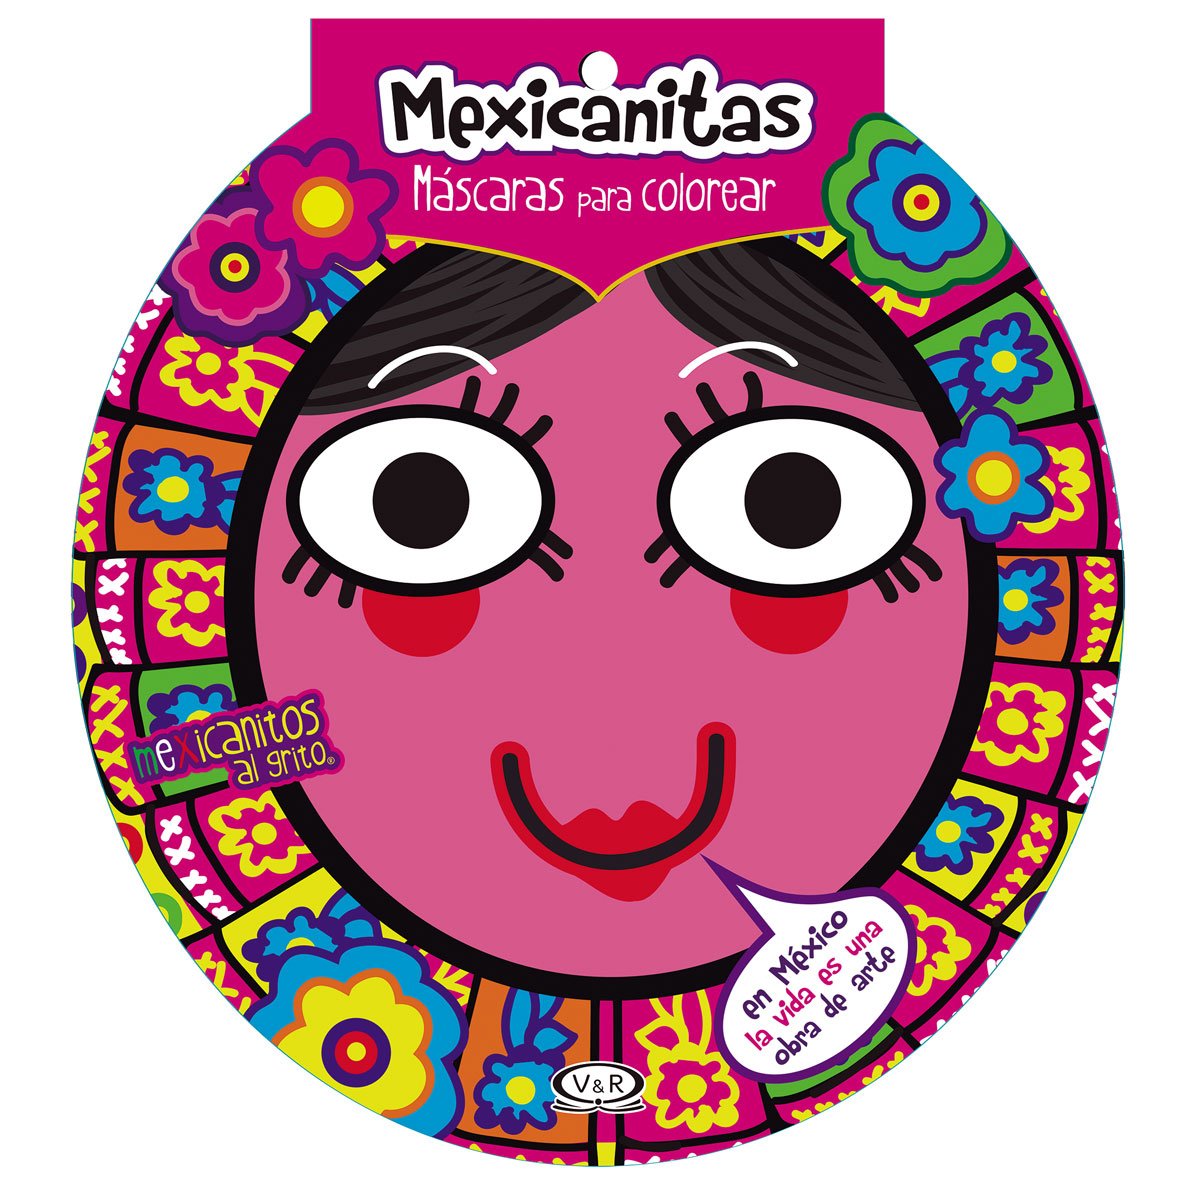 Máscaras Mexicanitas Vergara&riba